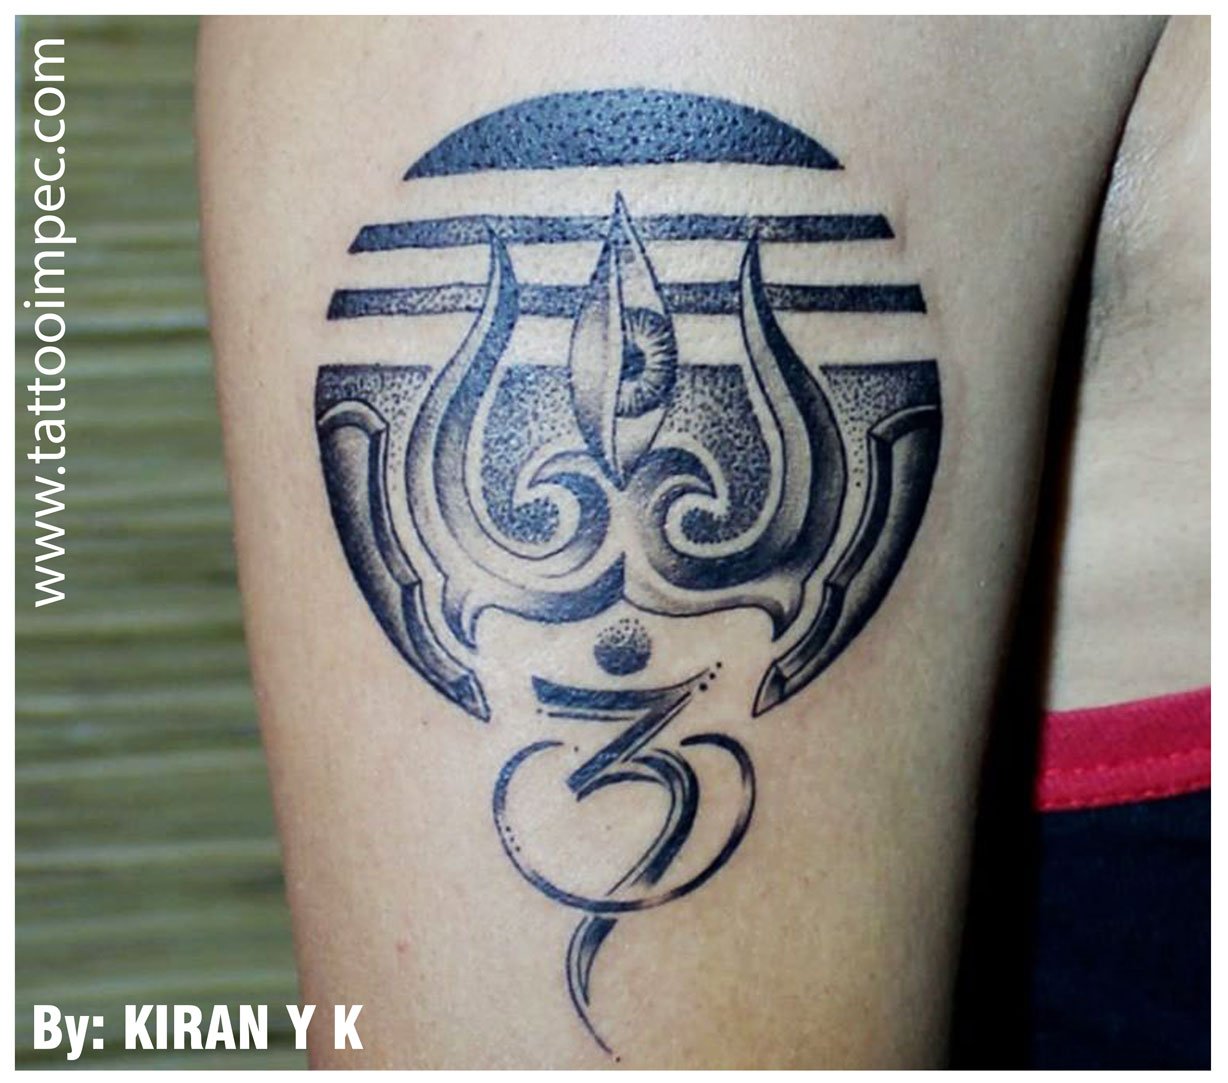 Tattoo uploaded by Kiran's tattoo mehsana • Meldi Ma Tattoo | Meldi Tattoo  | kiran tattoo • Tattoodo